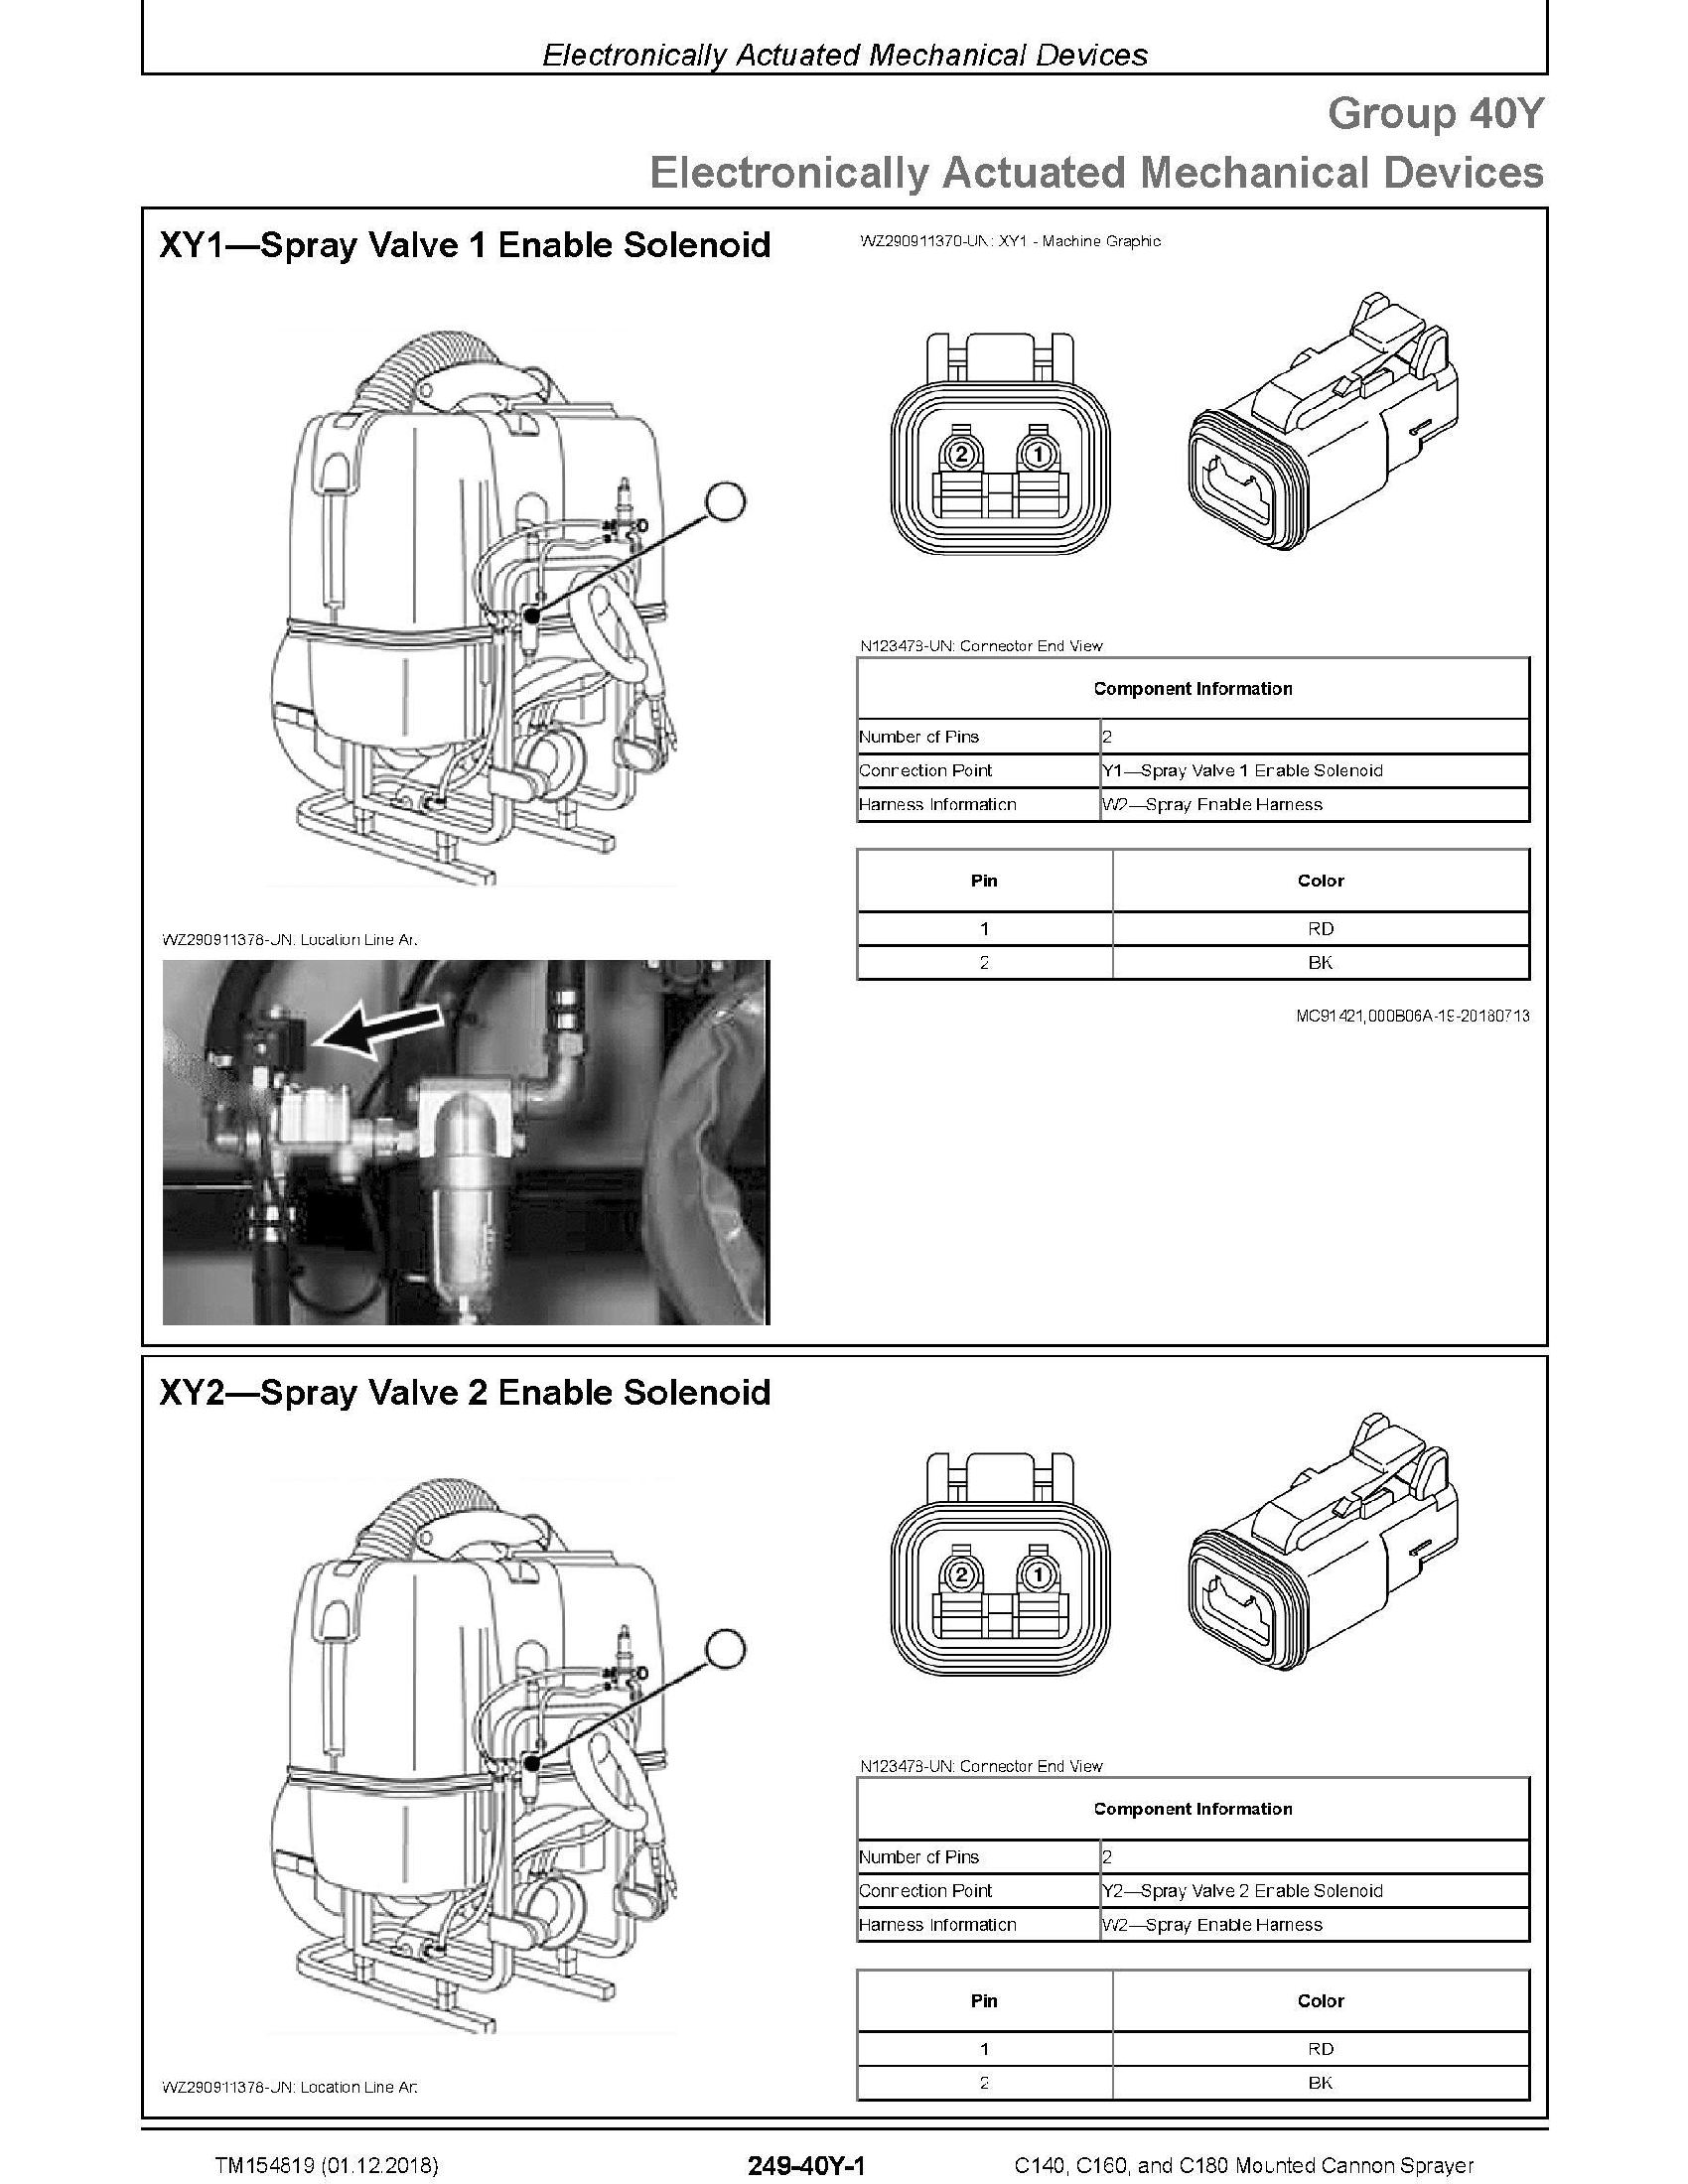 John Deere C180 manual pdf